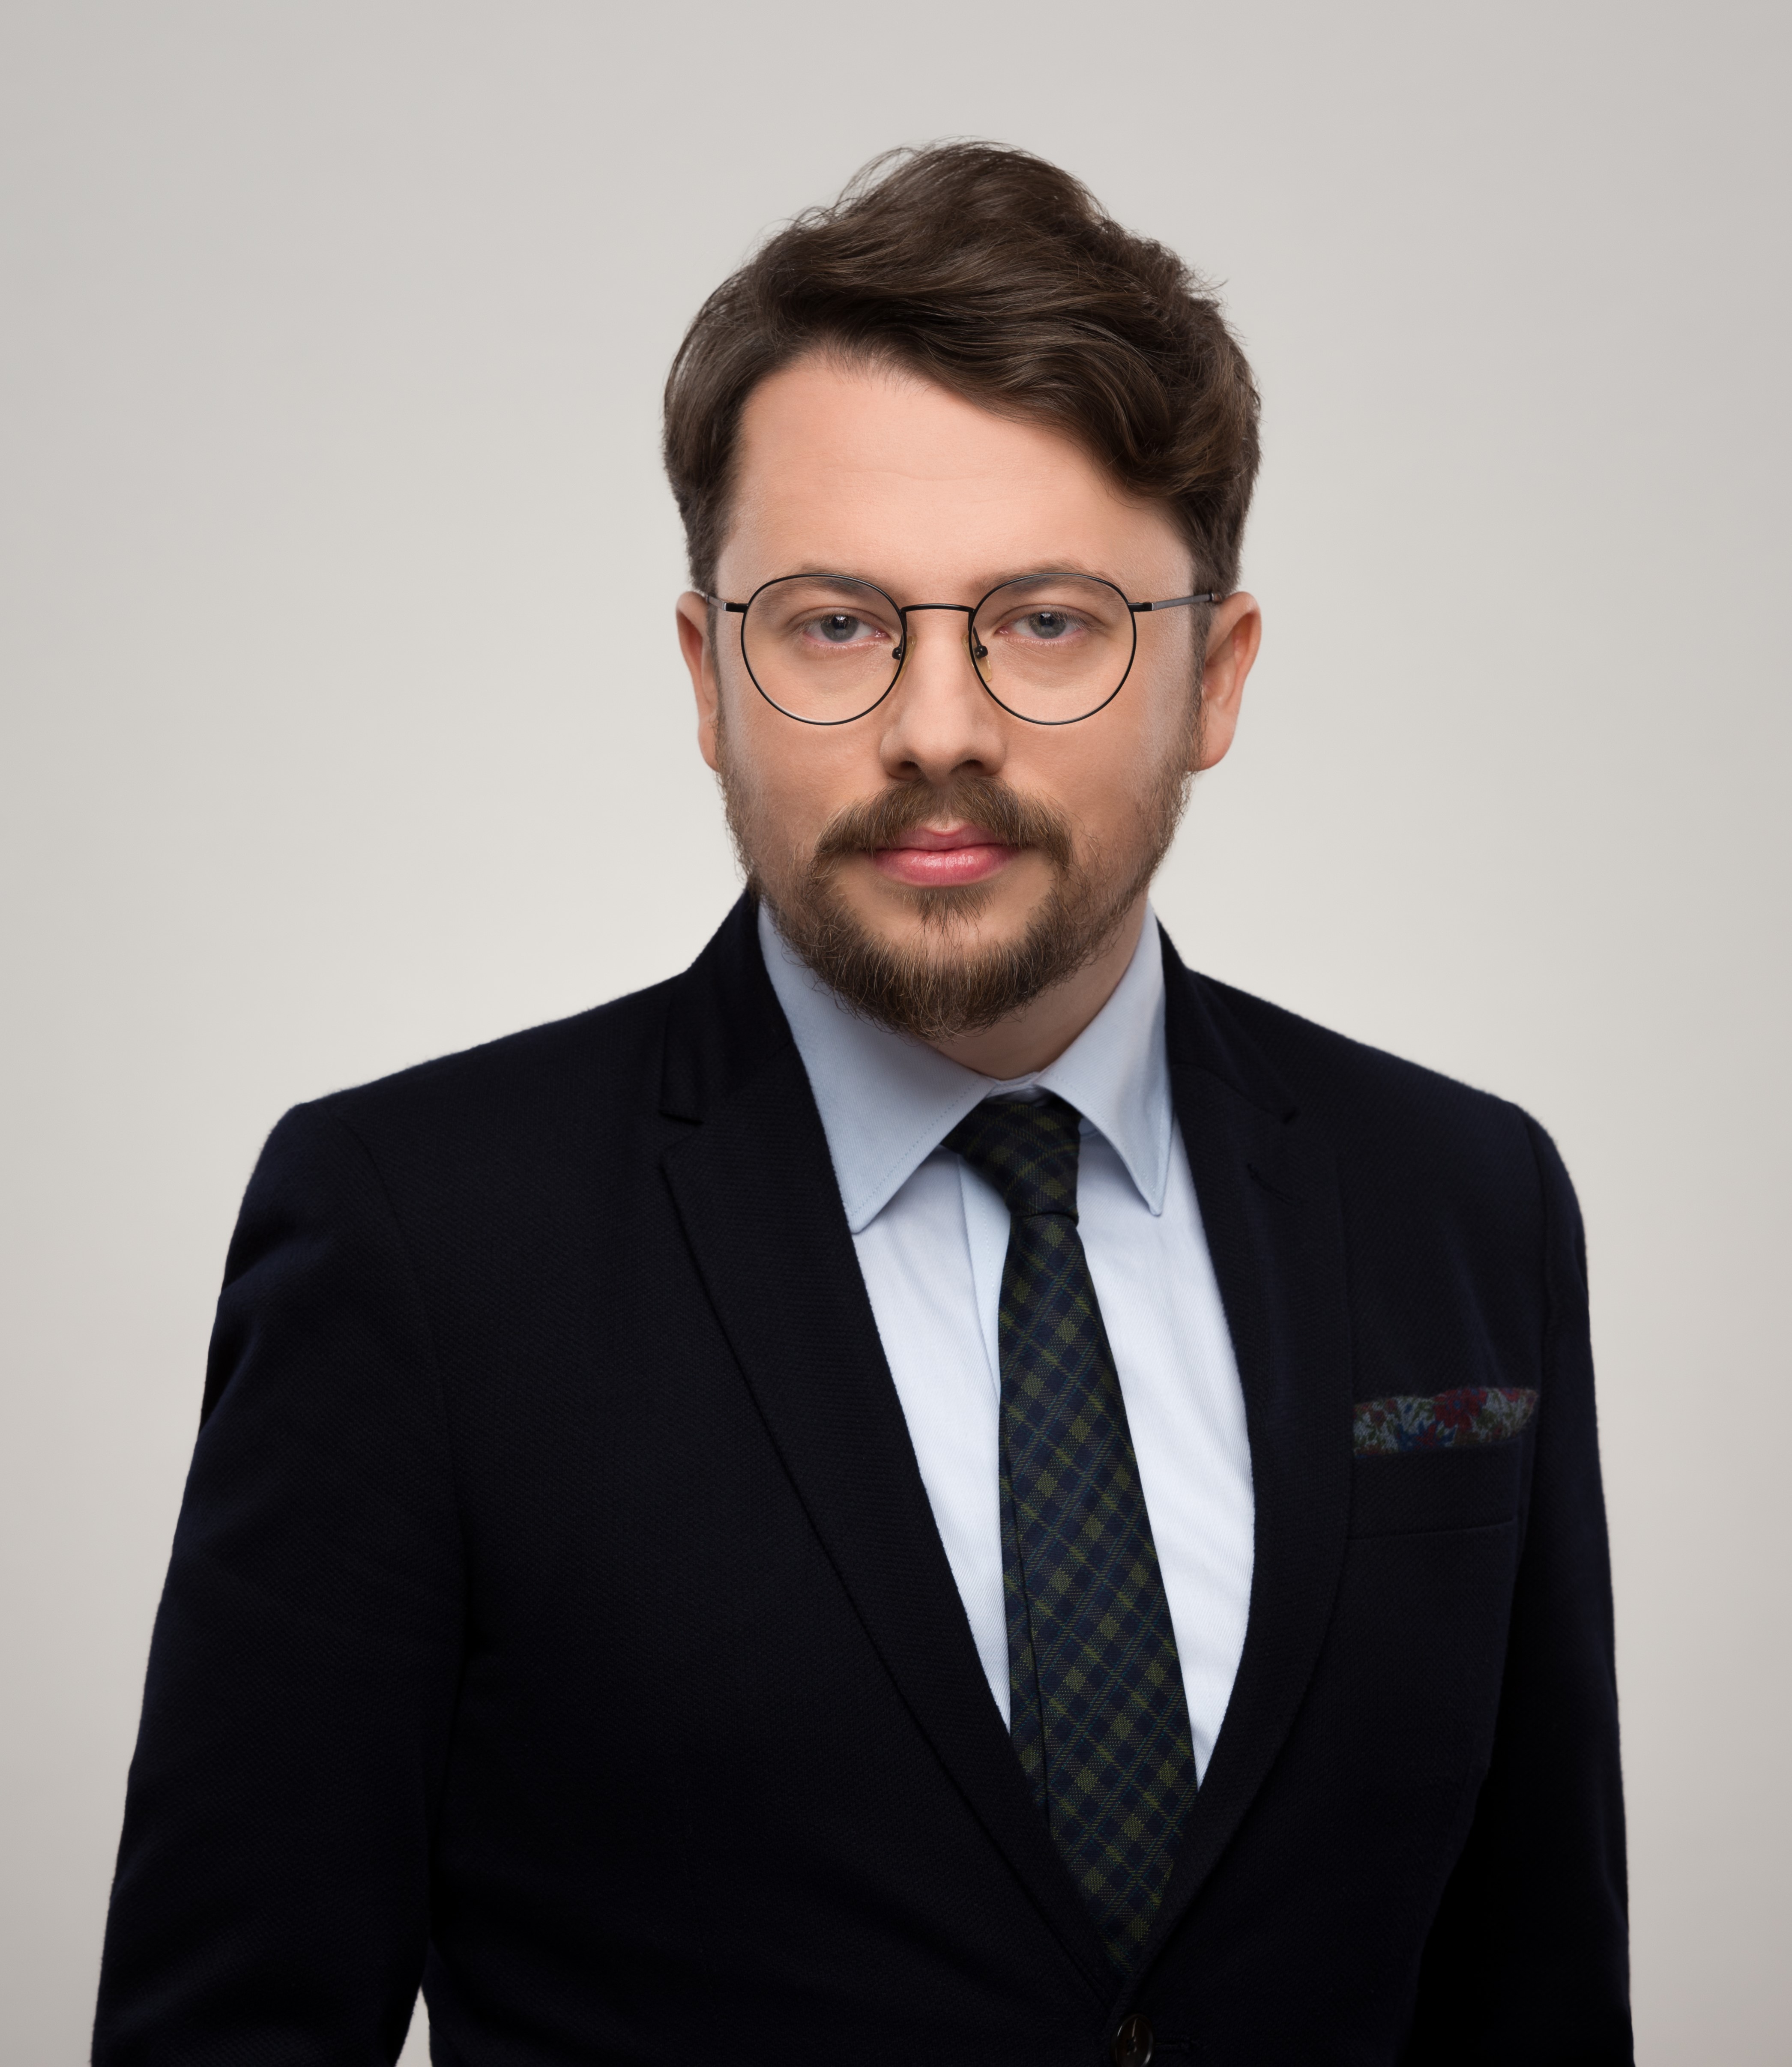 Profile image of Dr Konrad Bielecki